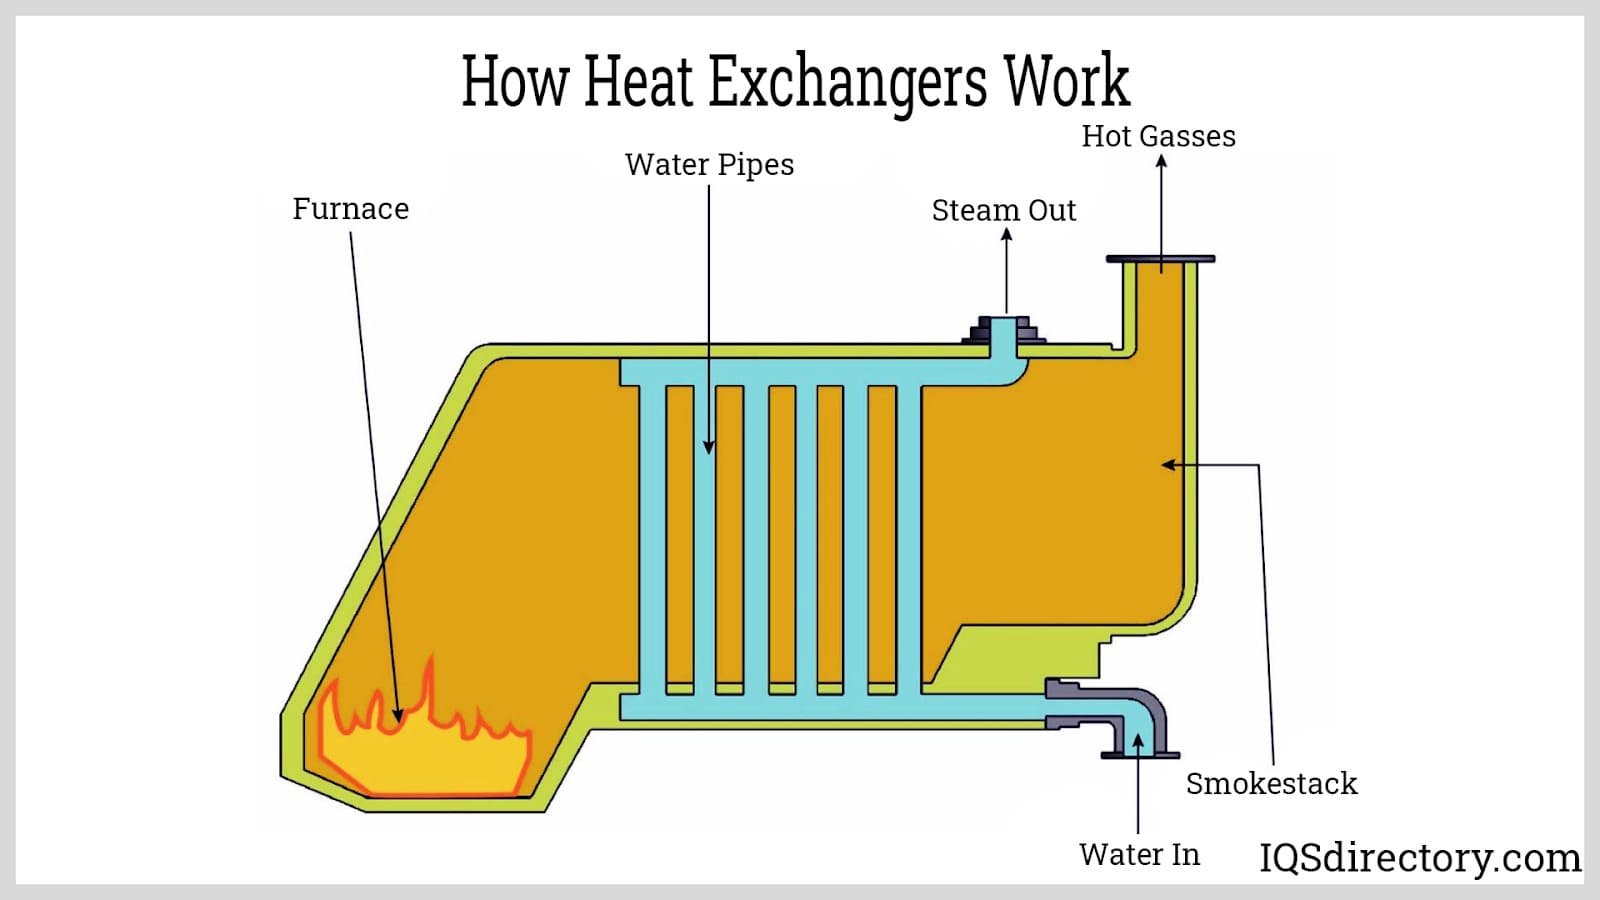 How Heat Exchangers Work